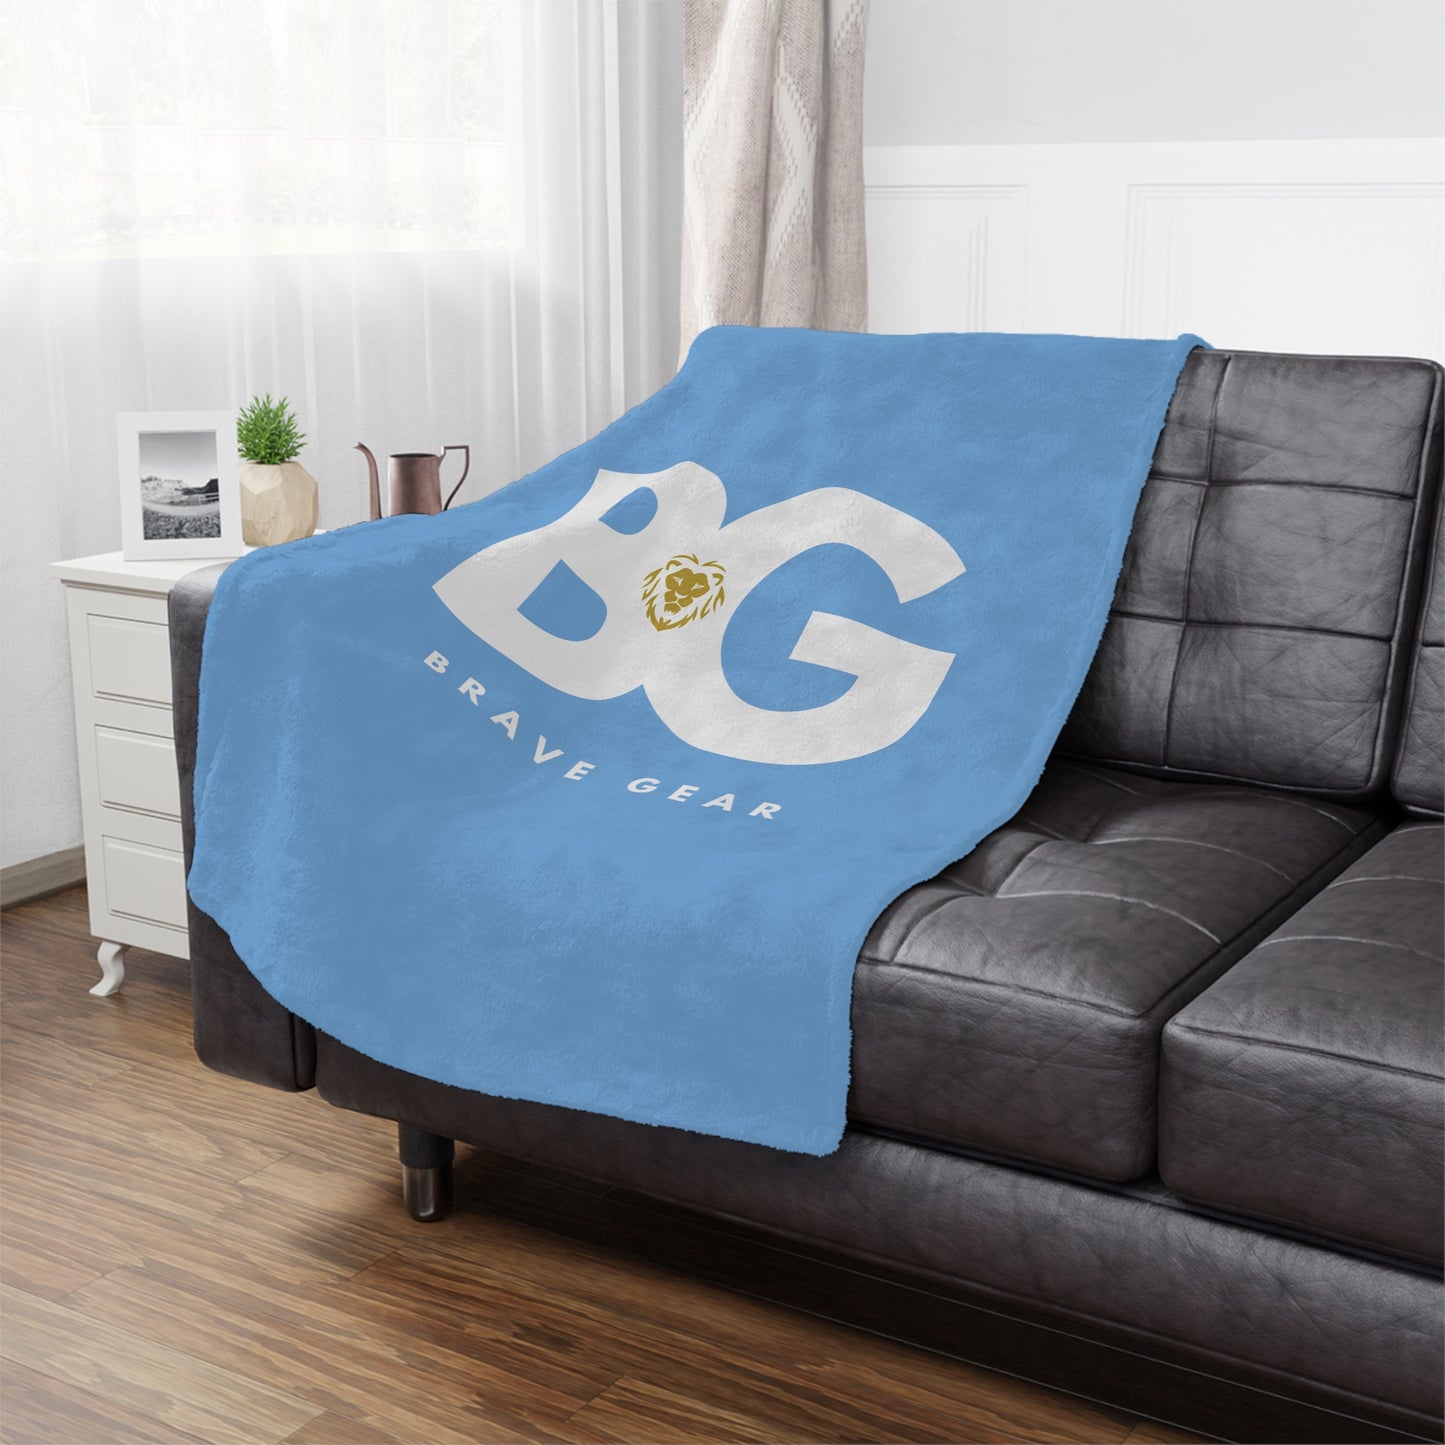 BG Minky Blanket (light blue)